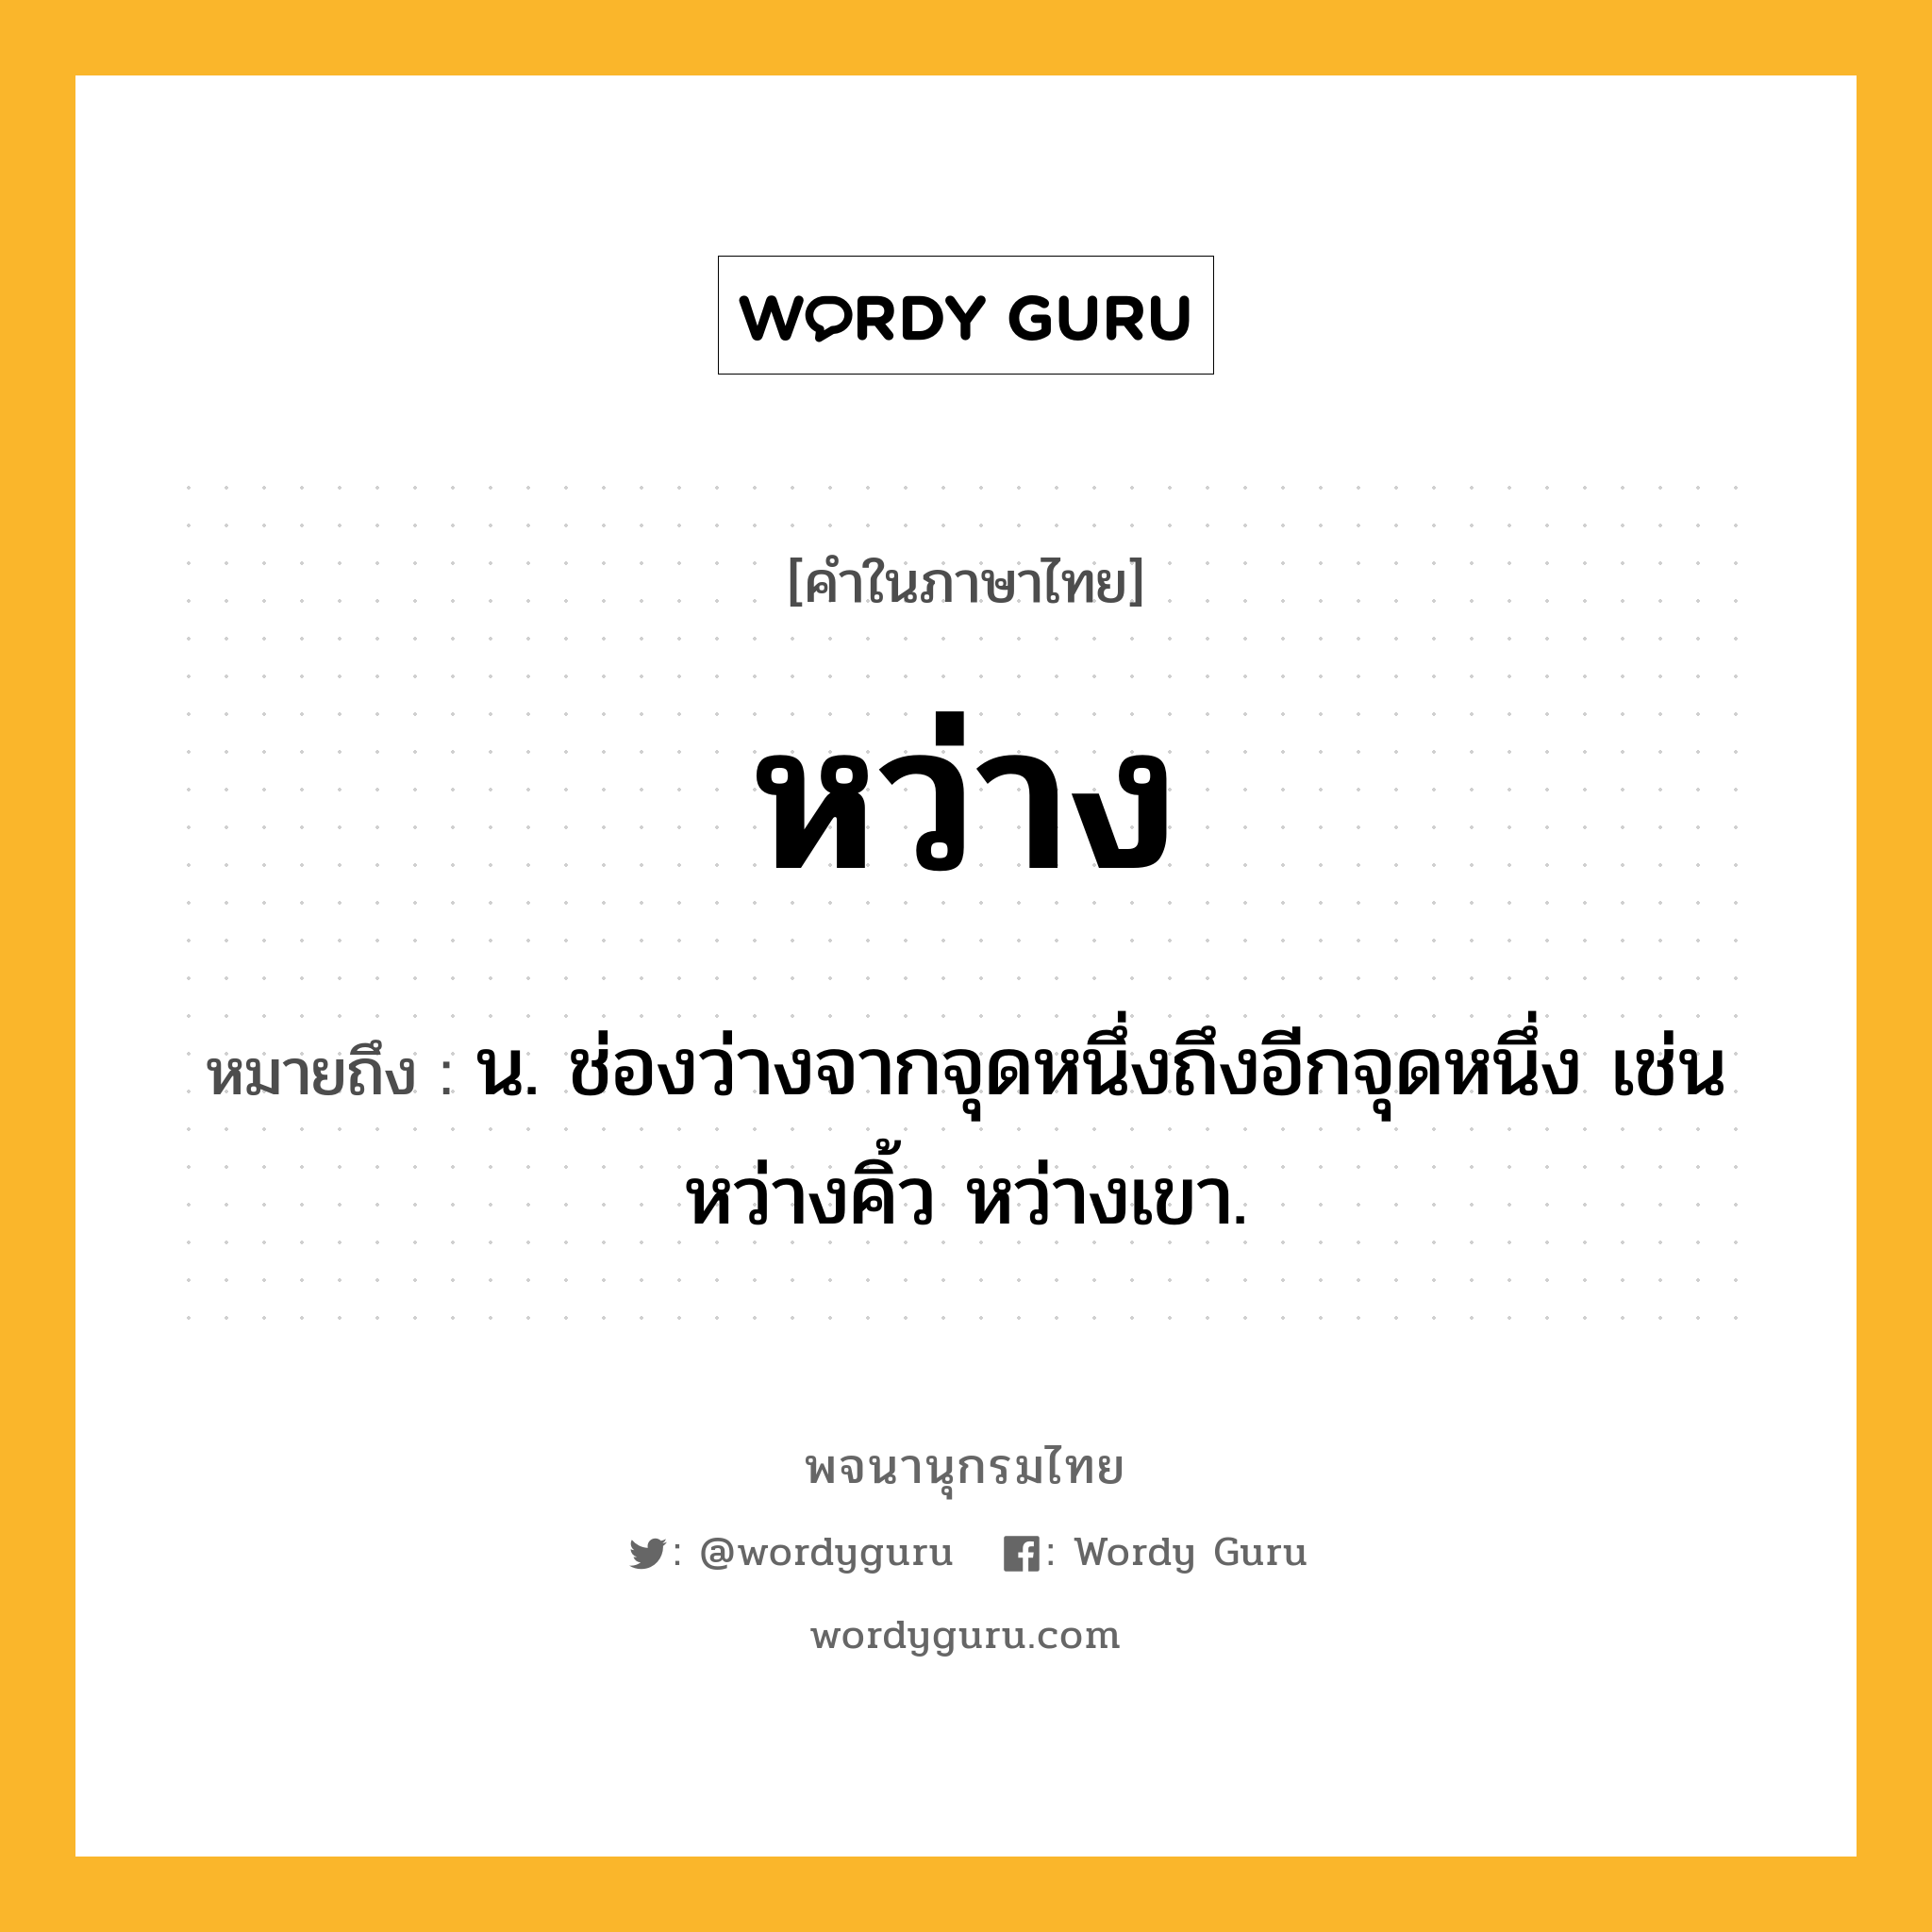 หว่าง ความหมาย หมายถึงอะไร?, คำในภาษาไทย หว่าง หมายถึง น. ช่องว่างจากจุดหนึ่งถึงอีกจุดหนึ่ง เช่น หว่างคิ้ว หว่างเขา.